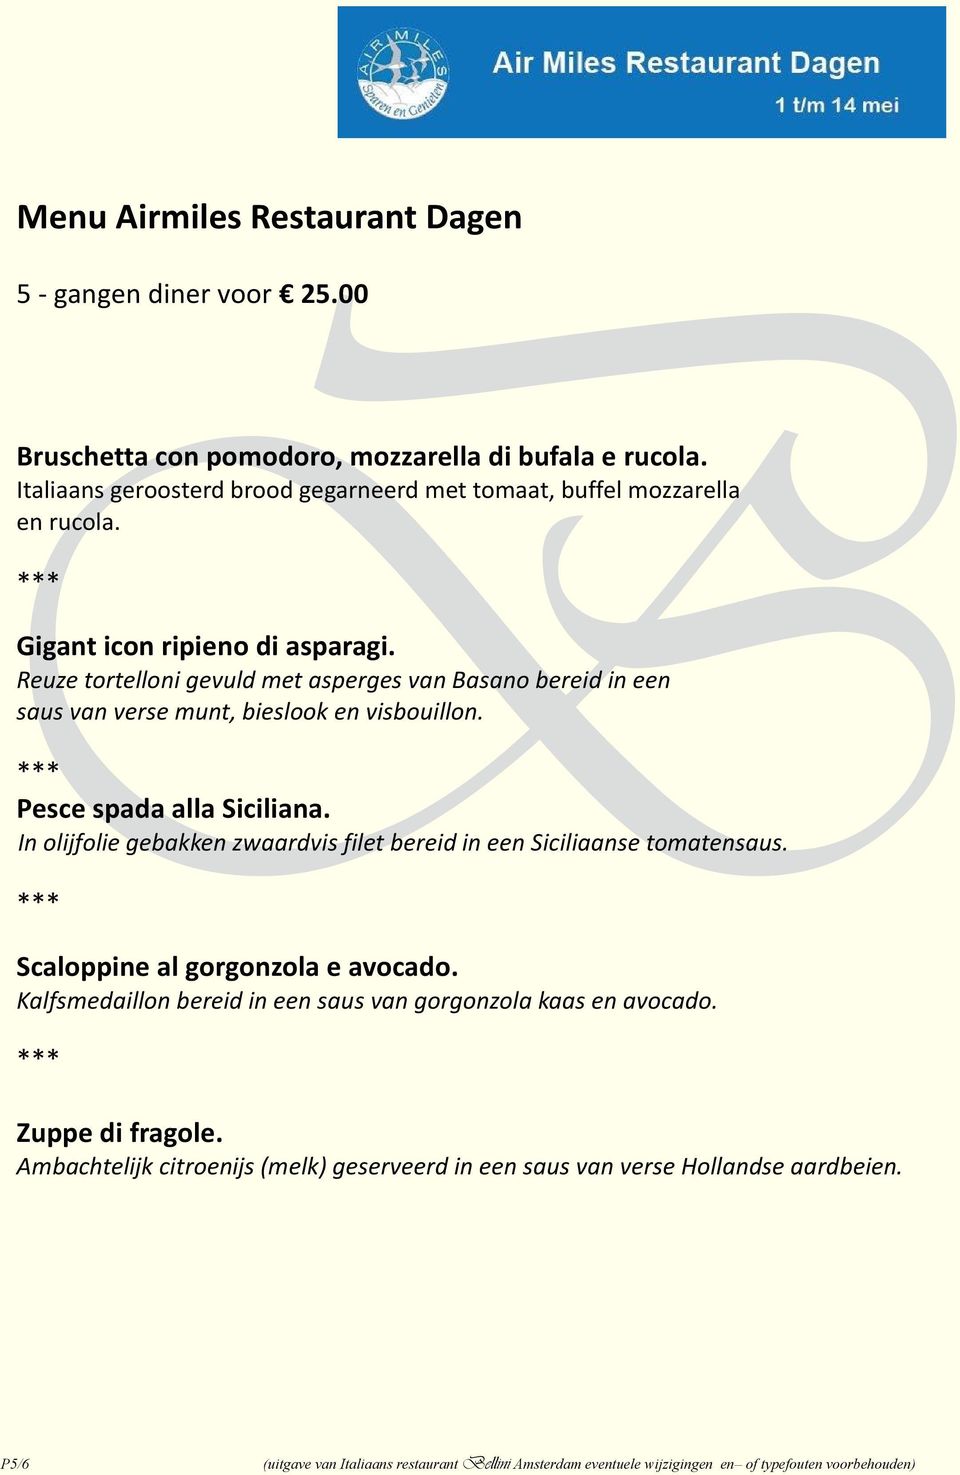 Reuze tortelloni gevuld met asperges van asano bereid in een saus van verse munt, bieslook en visbouillon. Pesce spada alla Siciliana.